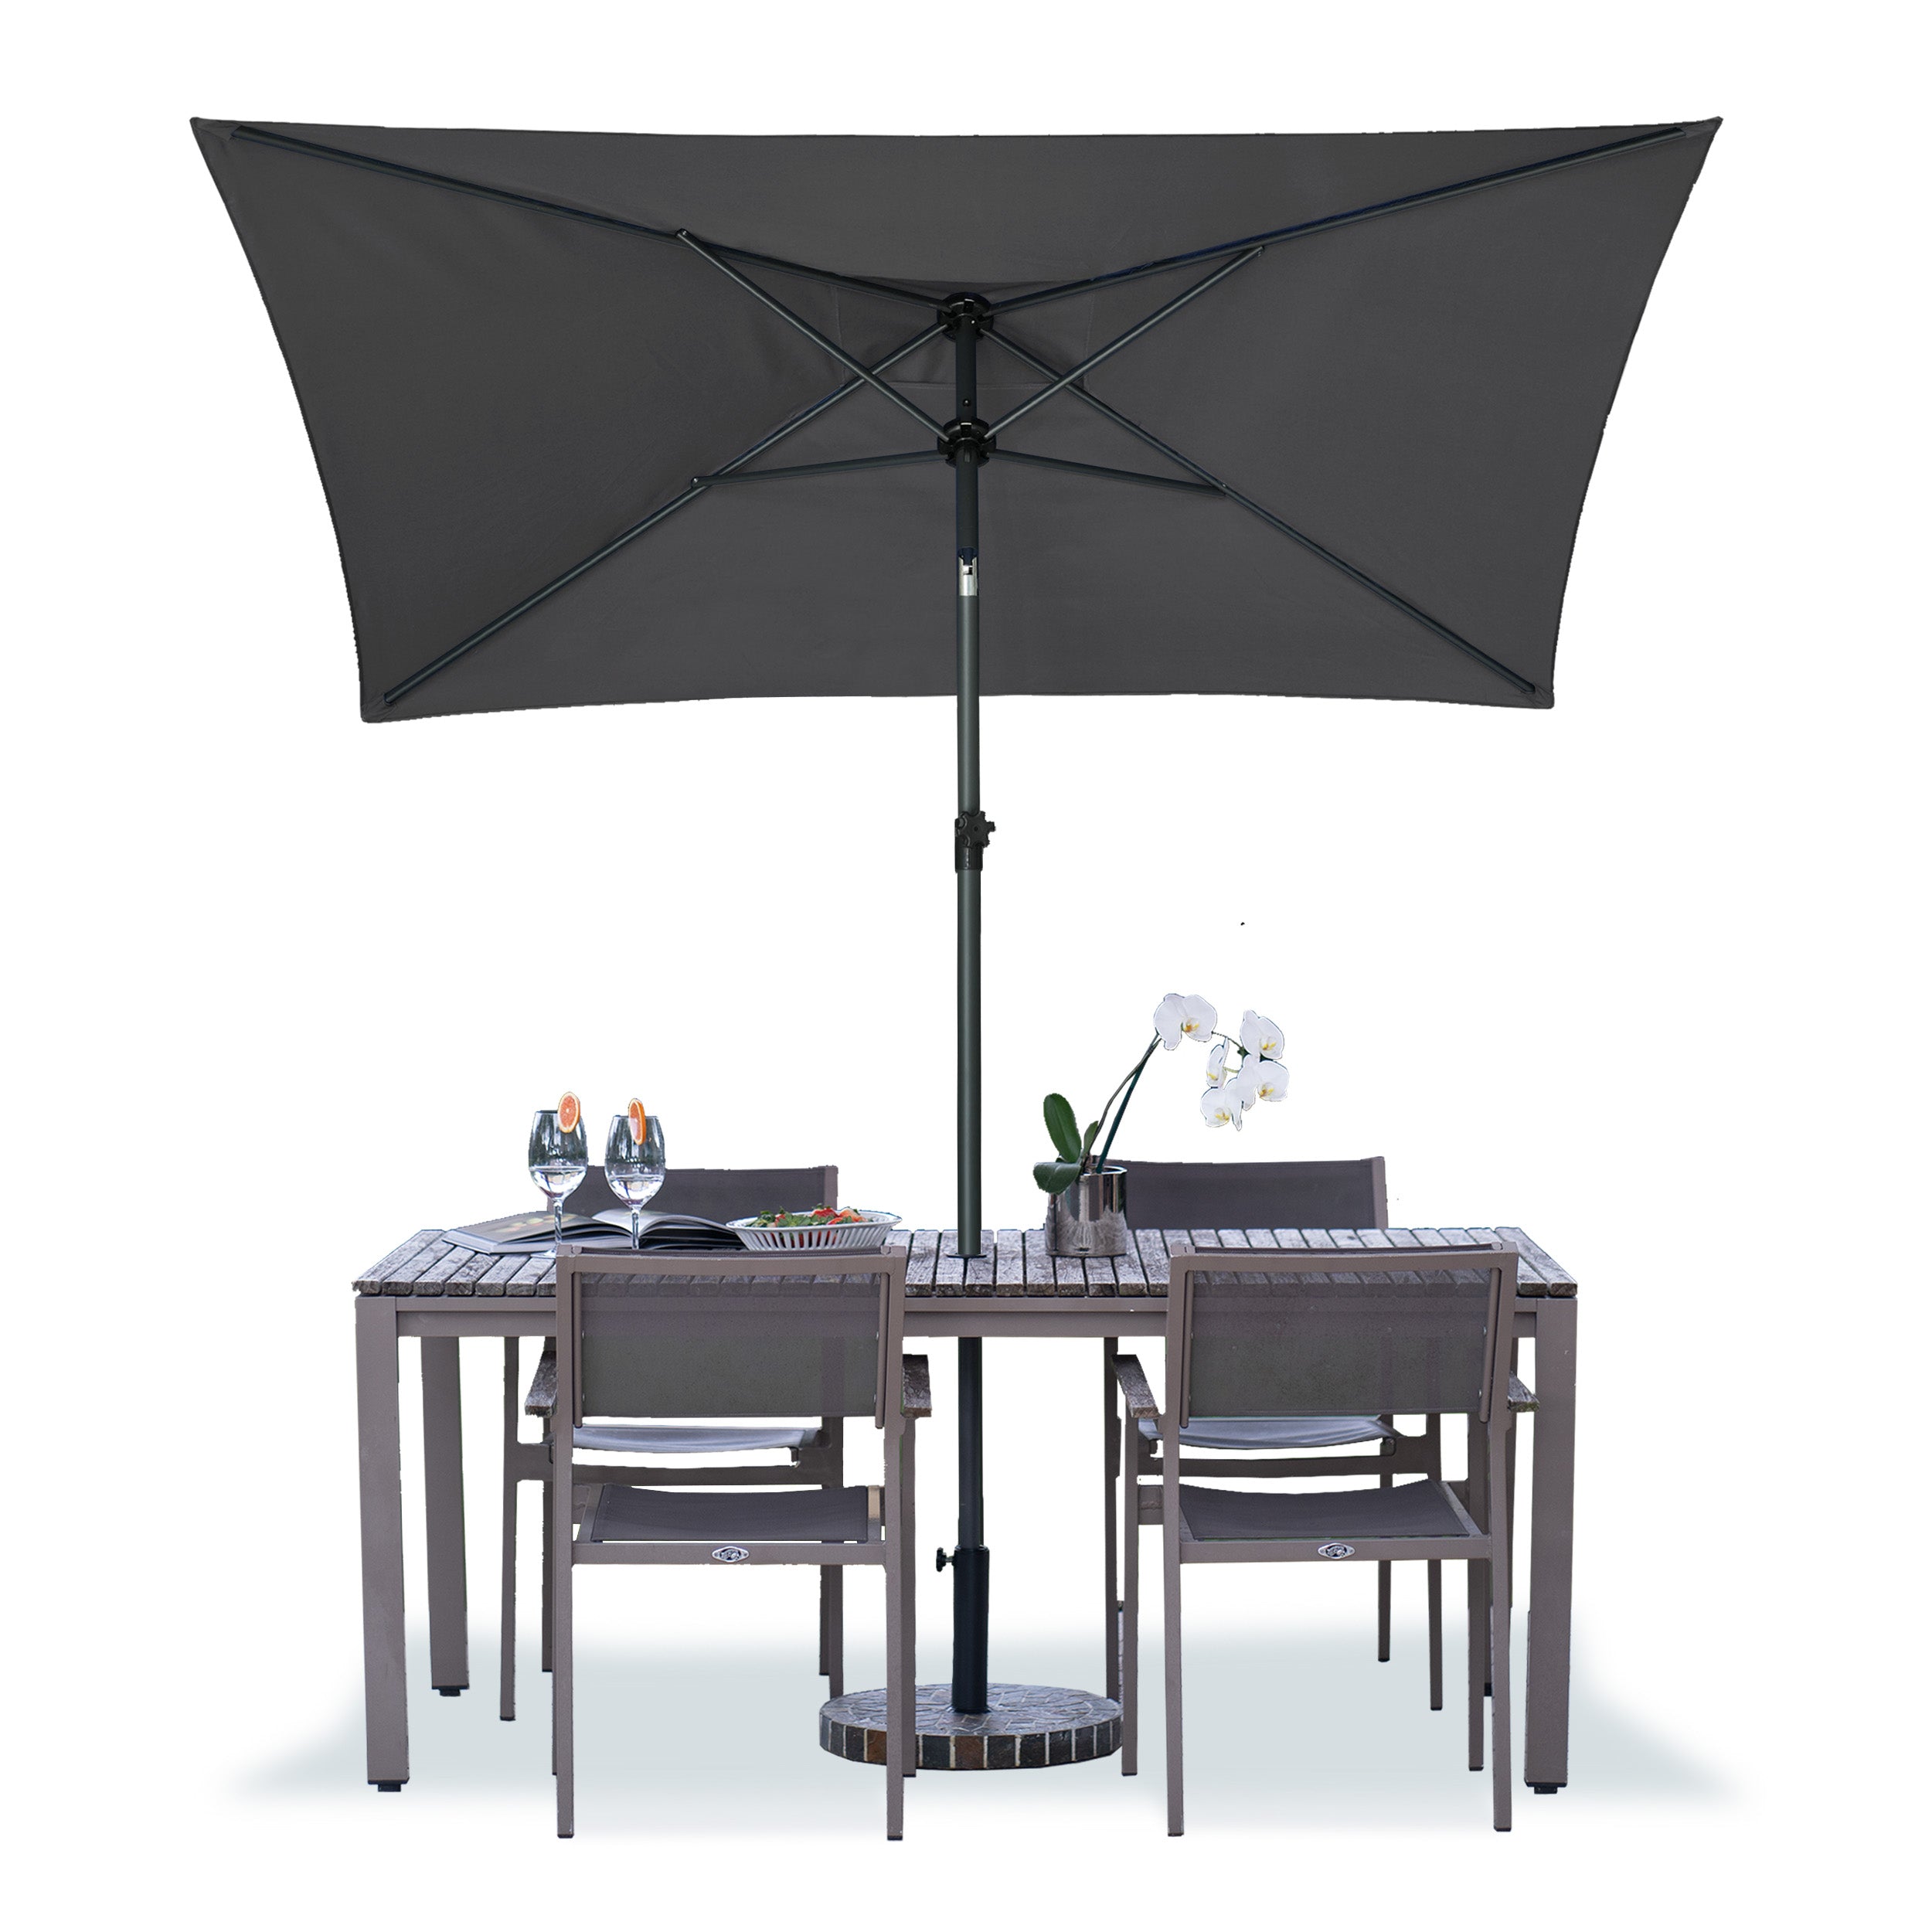 AMMSUN 6.5 x 4.5ft Rectangular Patio Umbrella Grey